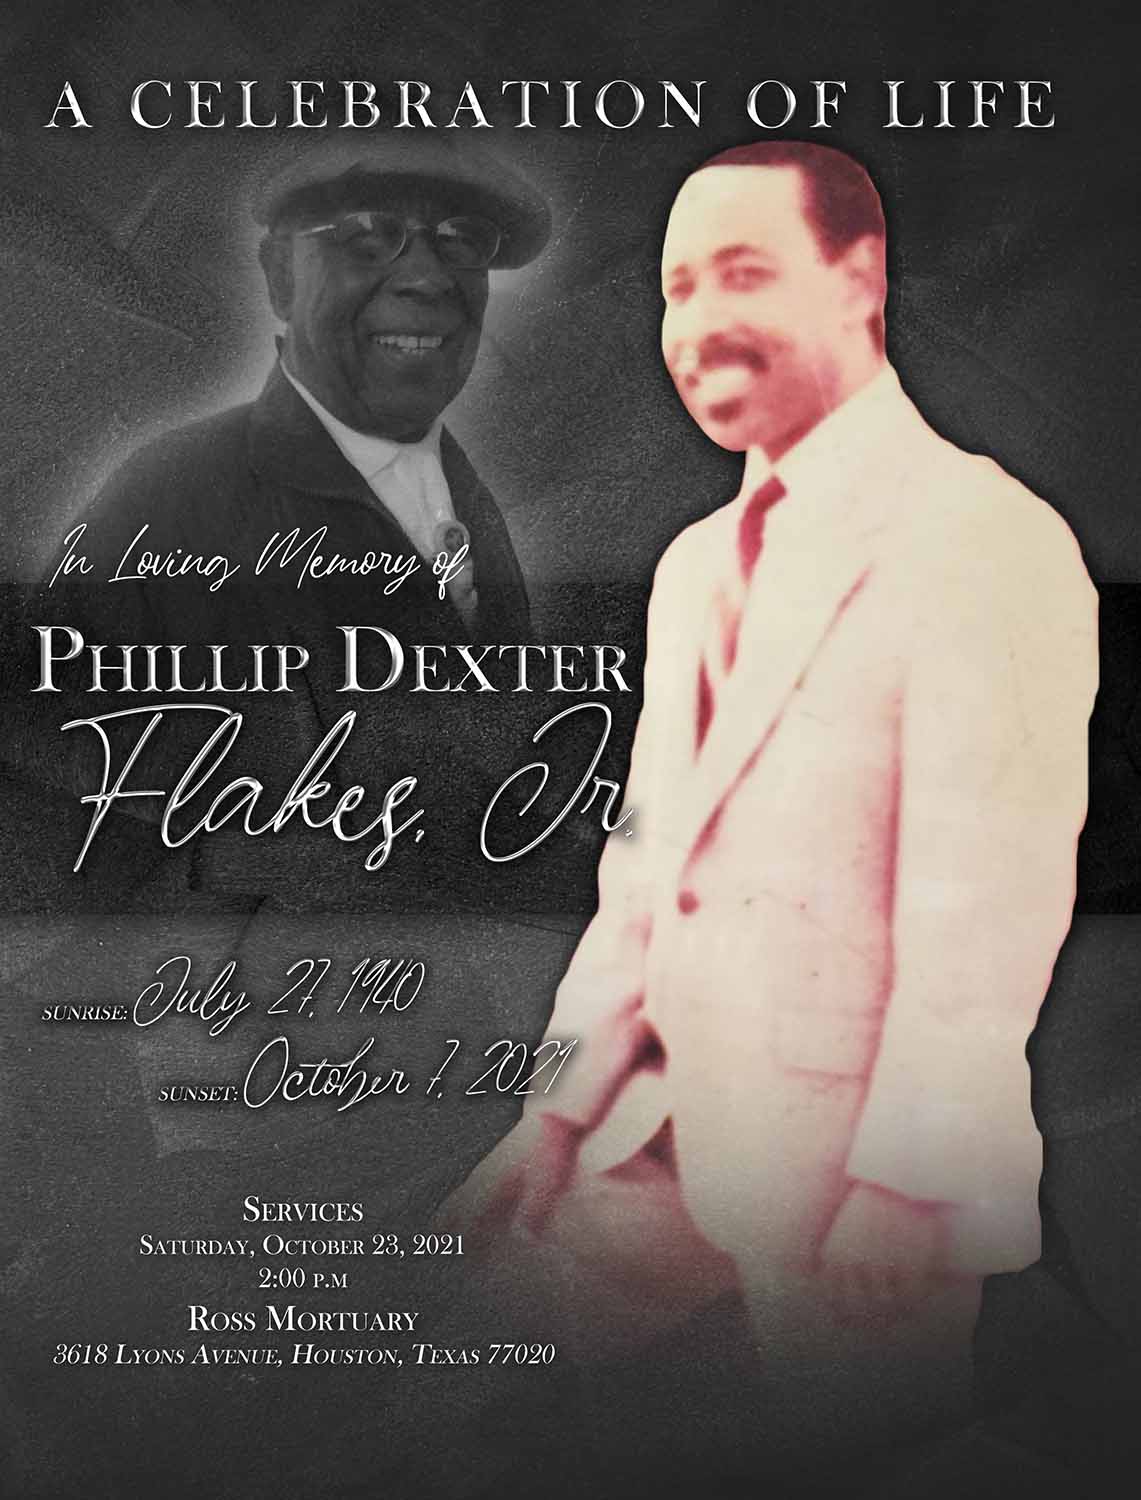 Phillip Dexter Flakes Jr. 1940-2021